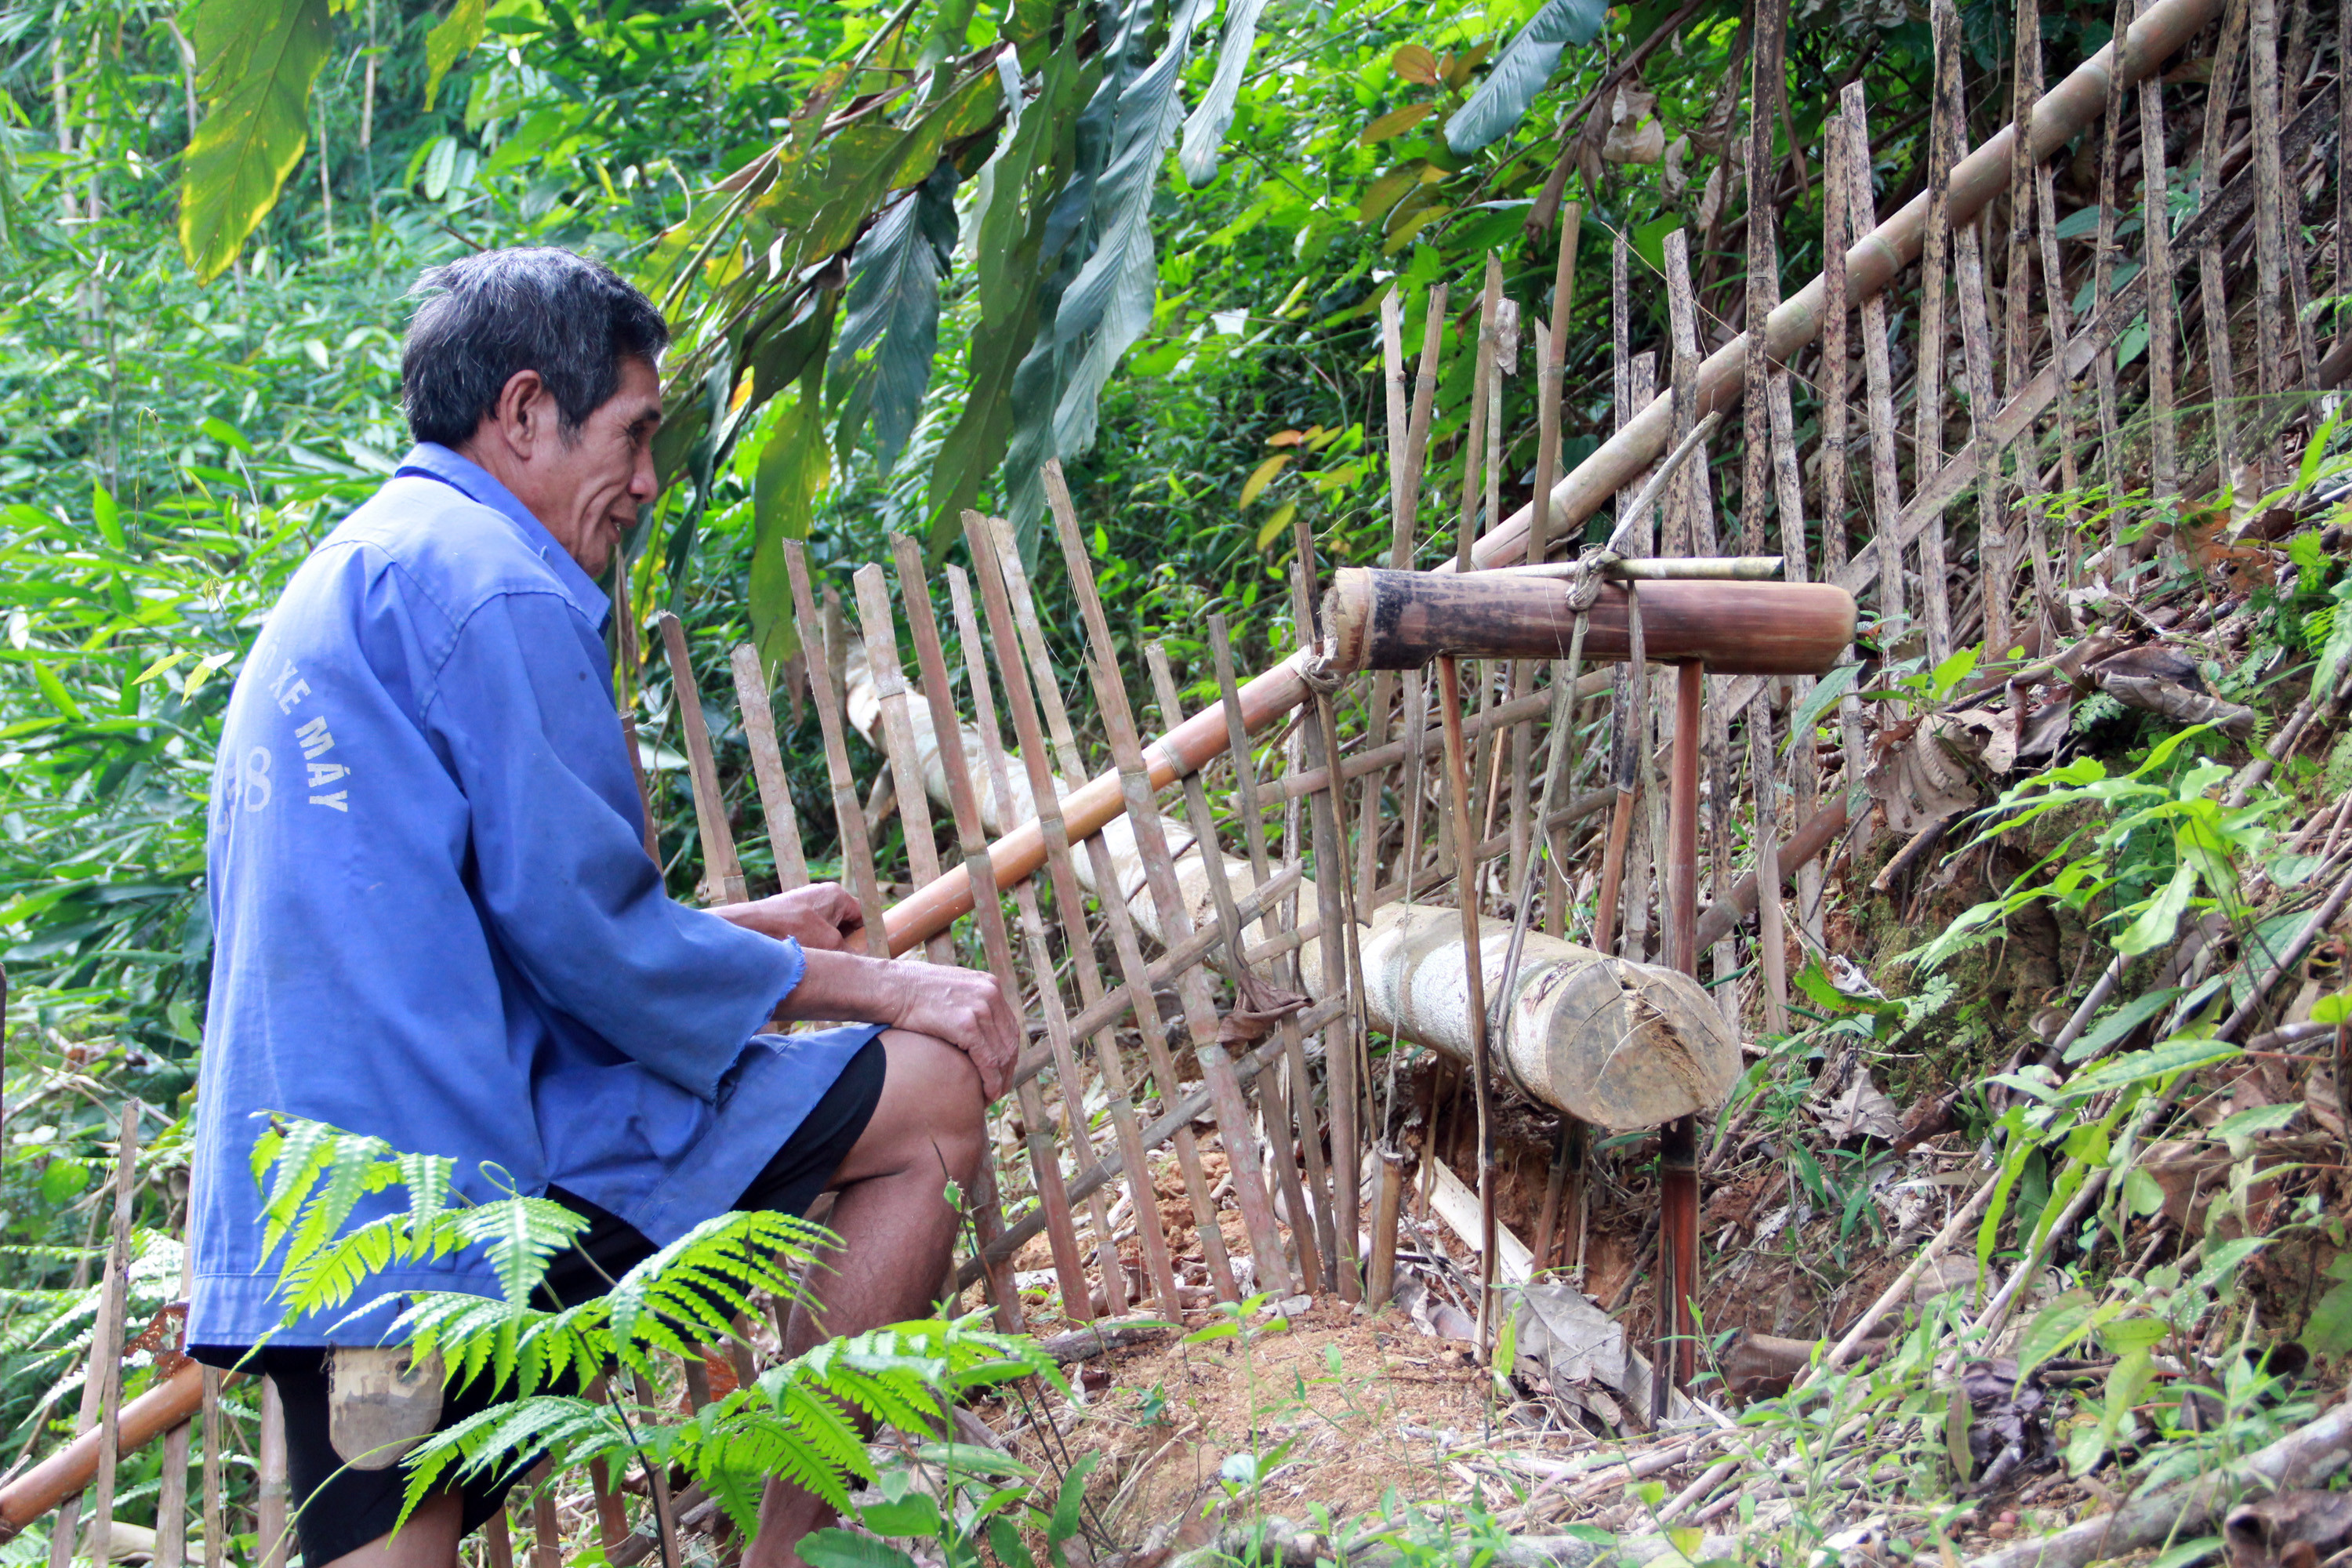 Bẫy đập là một trong những phương thức được người Thái ưa chuộng để săn các loài thú vật vì bỏ ít công, sử dụng lâu dài và không gây nguy hại đến người và các loài vật nuôi.